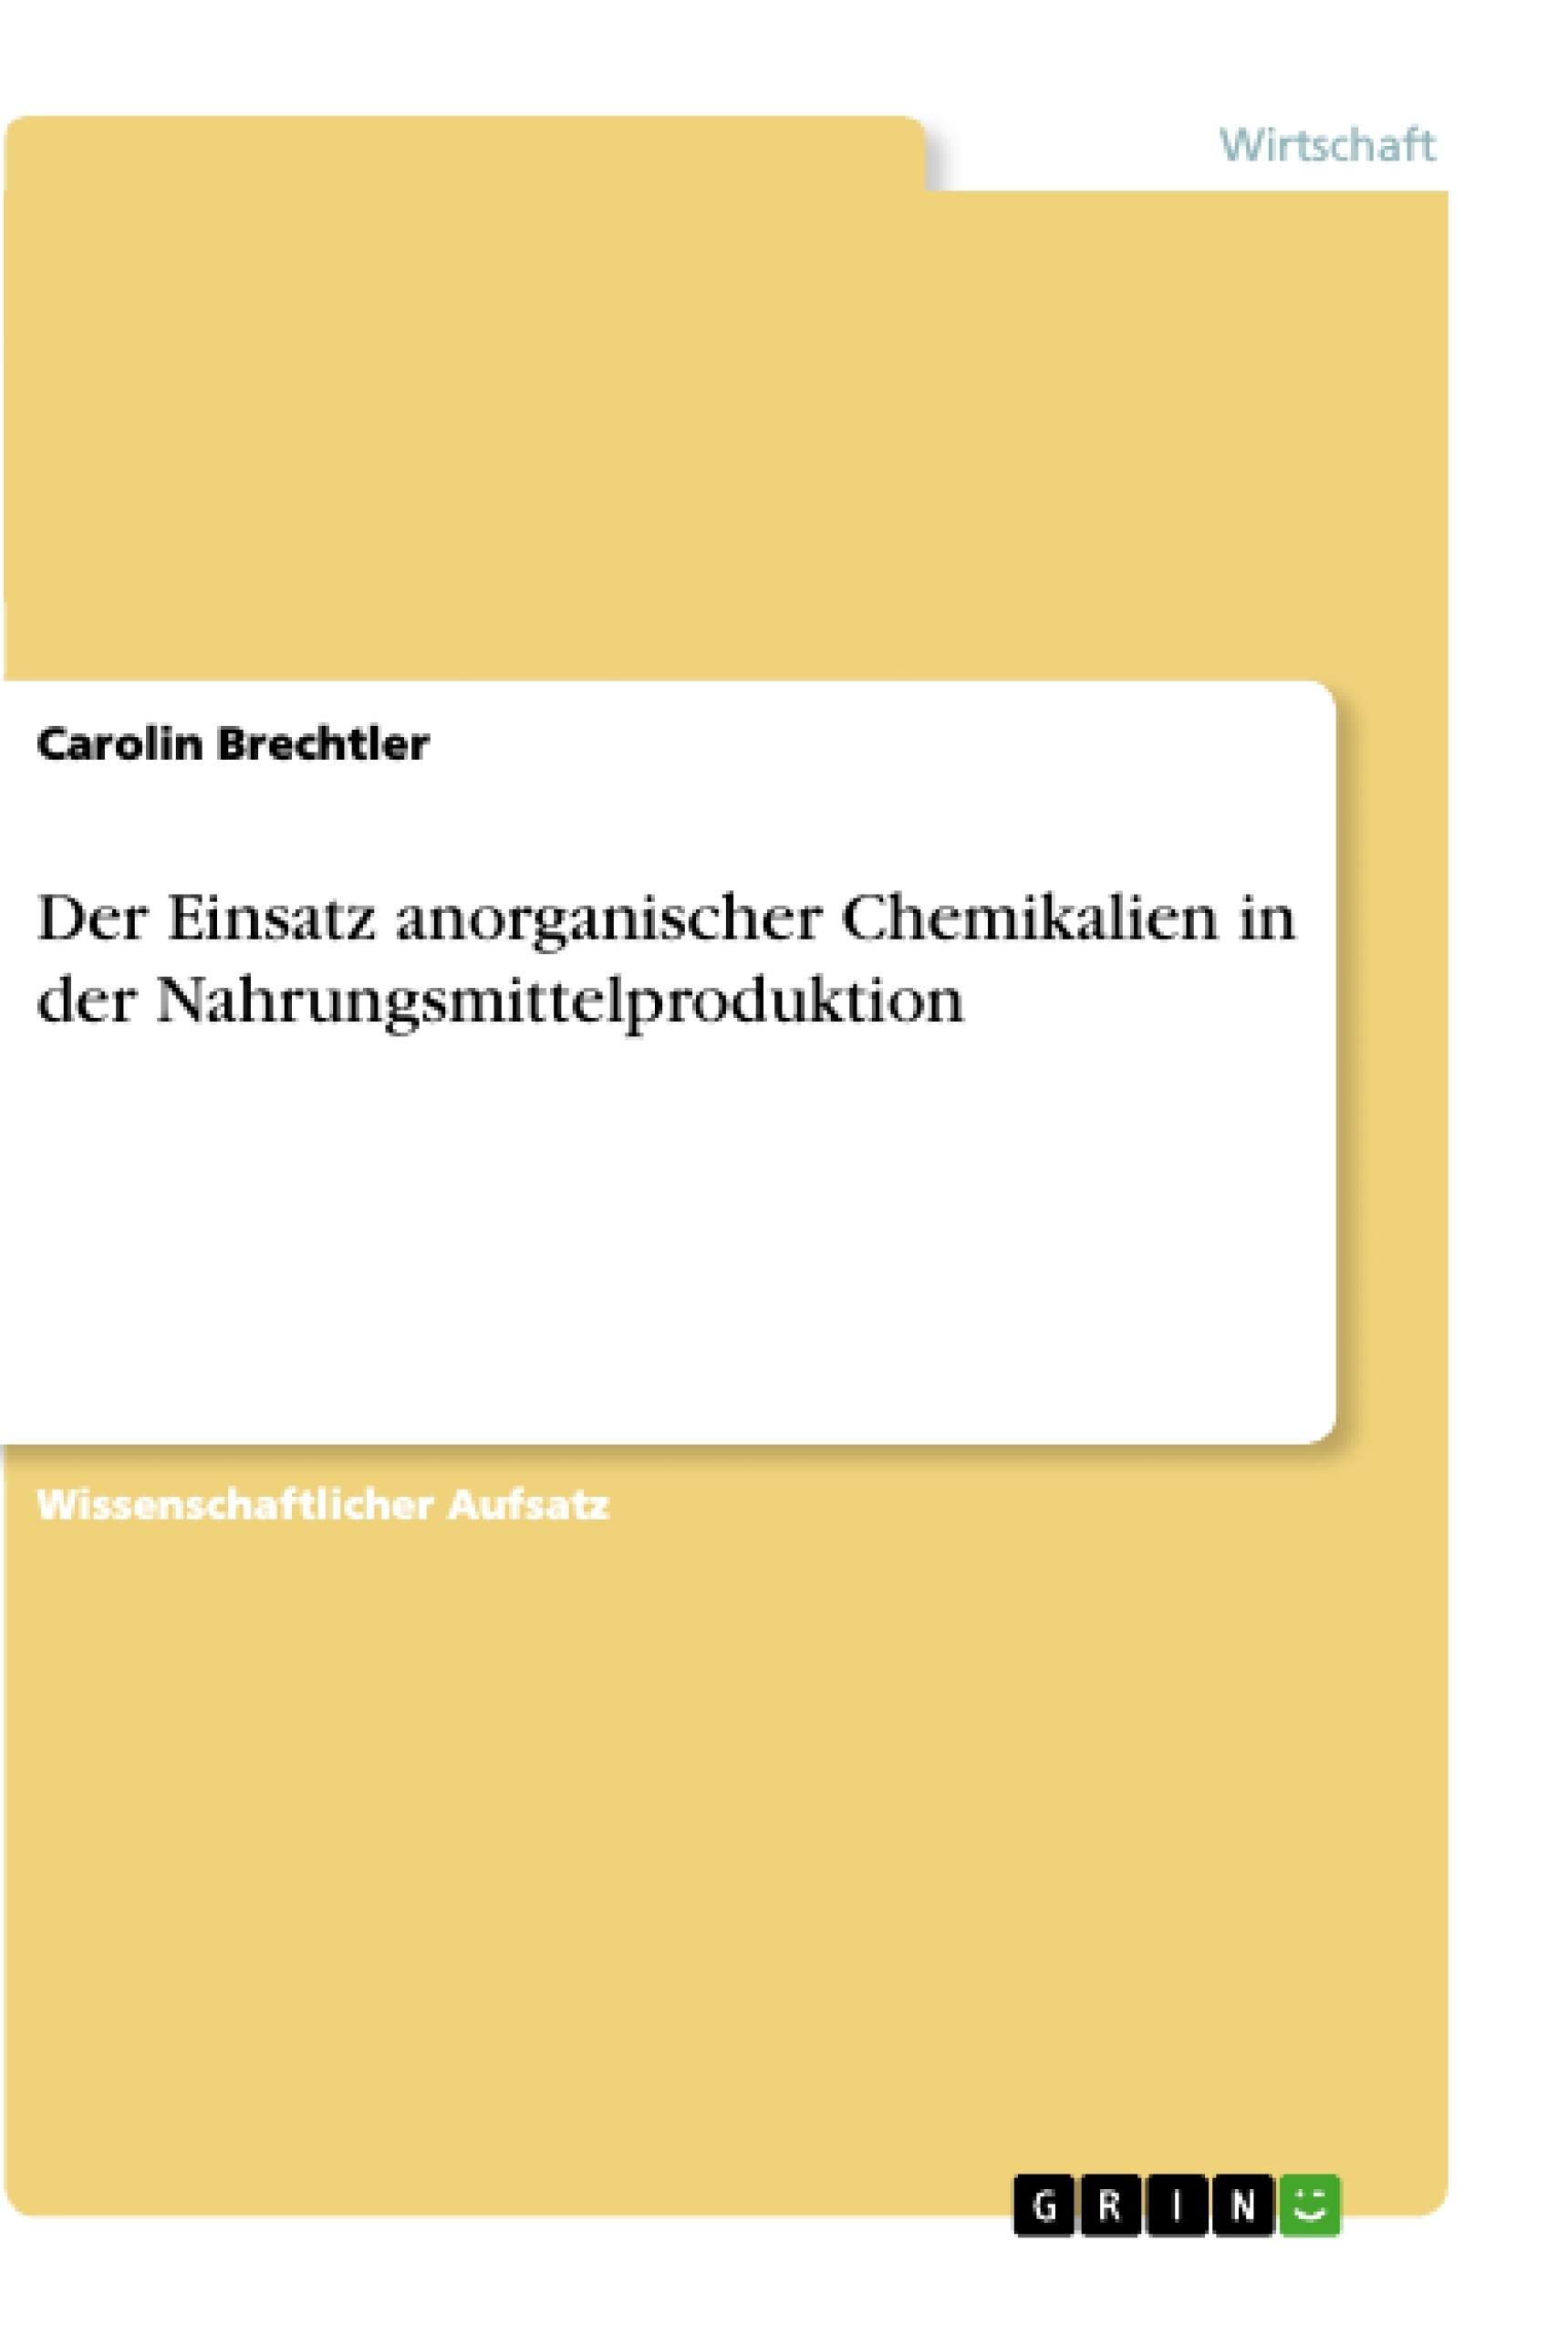 Title: Der Einsatz anorganischer Chemikalien in der Nahrungsmittelproduktion